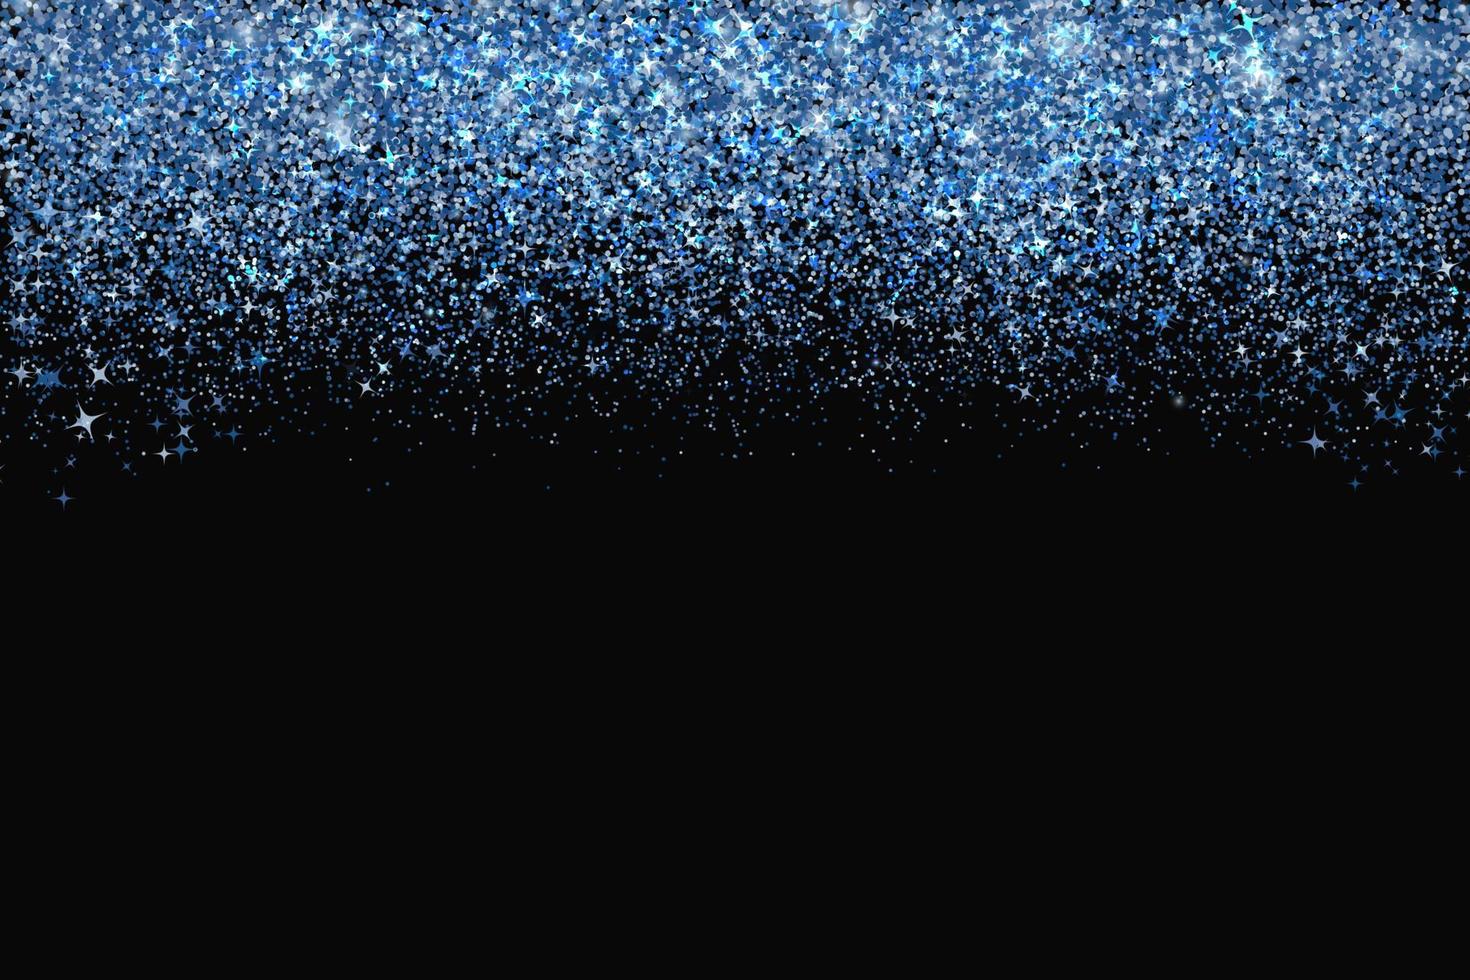 confettis dans les tons de bordure bleue classique isolés sur fond noir. chute des points scintillants. fond de vecteur de poussière brillante. la couleur de l'année 2020. nuances d'effet de texture de paillettes bleues. modèle facile à modifier.